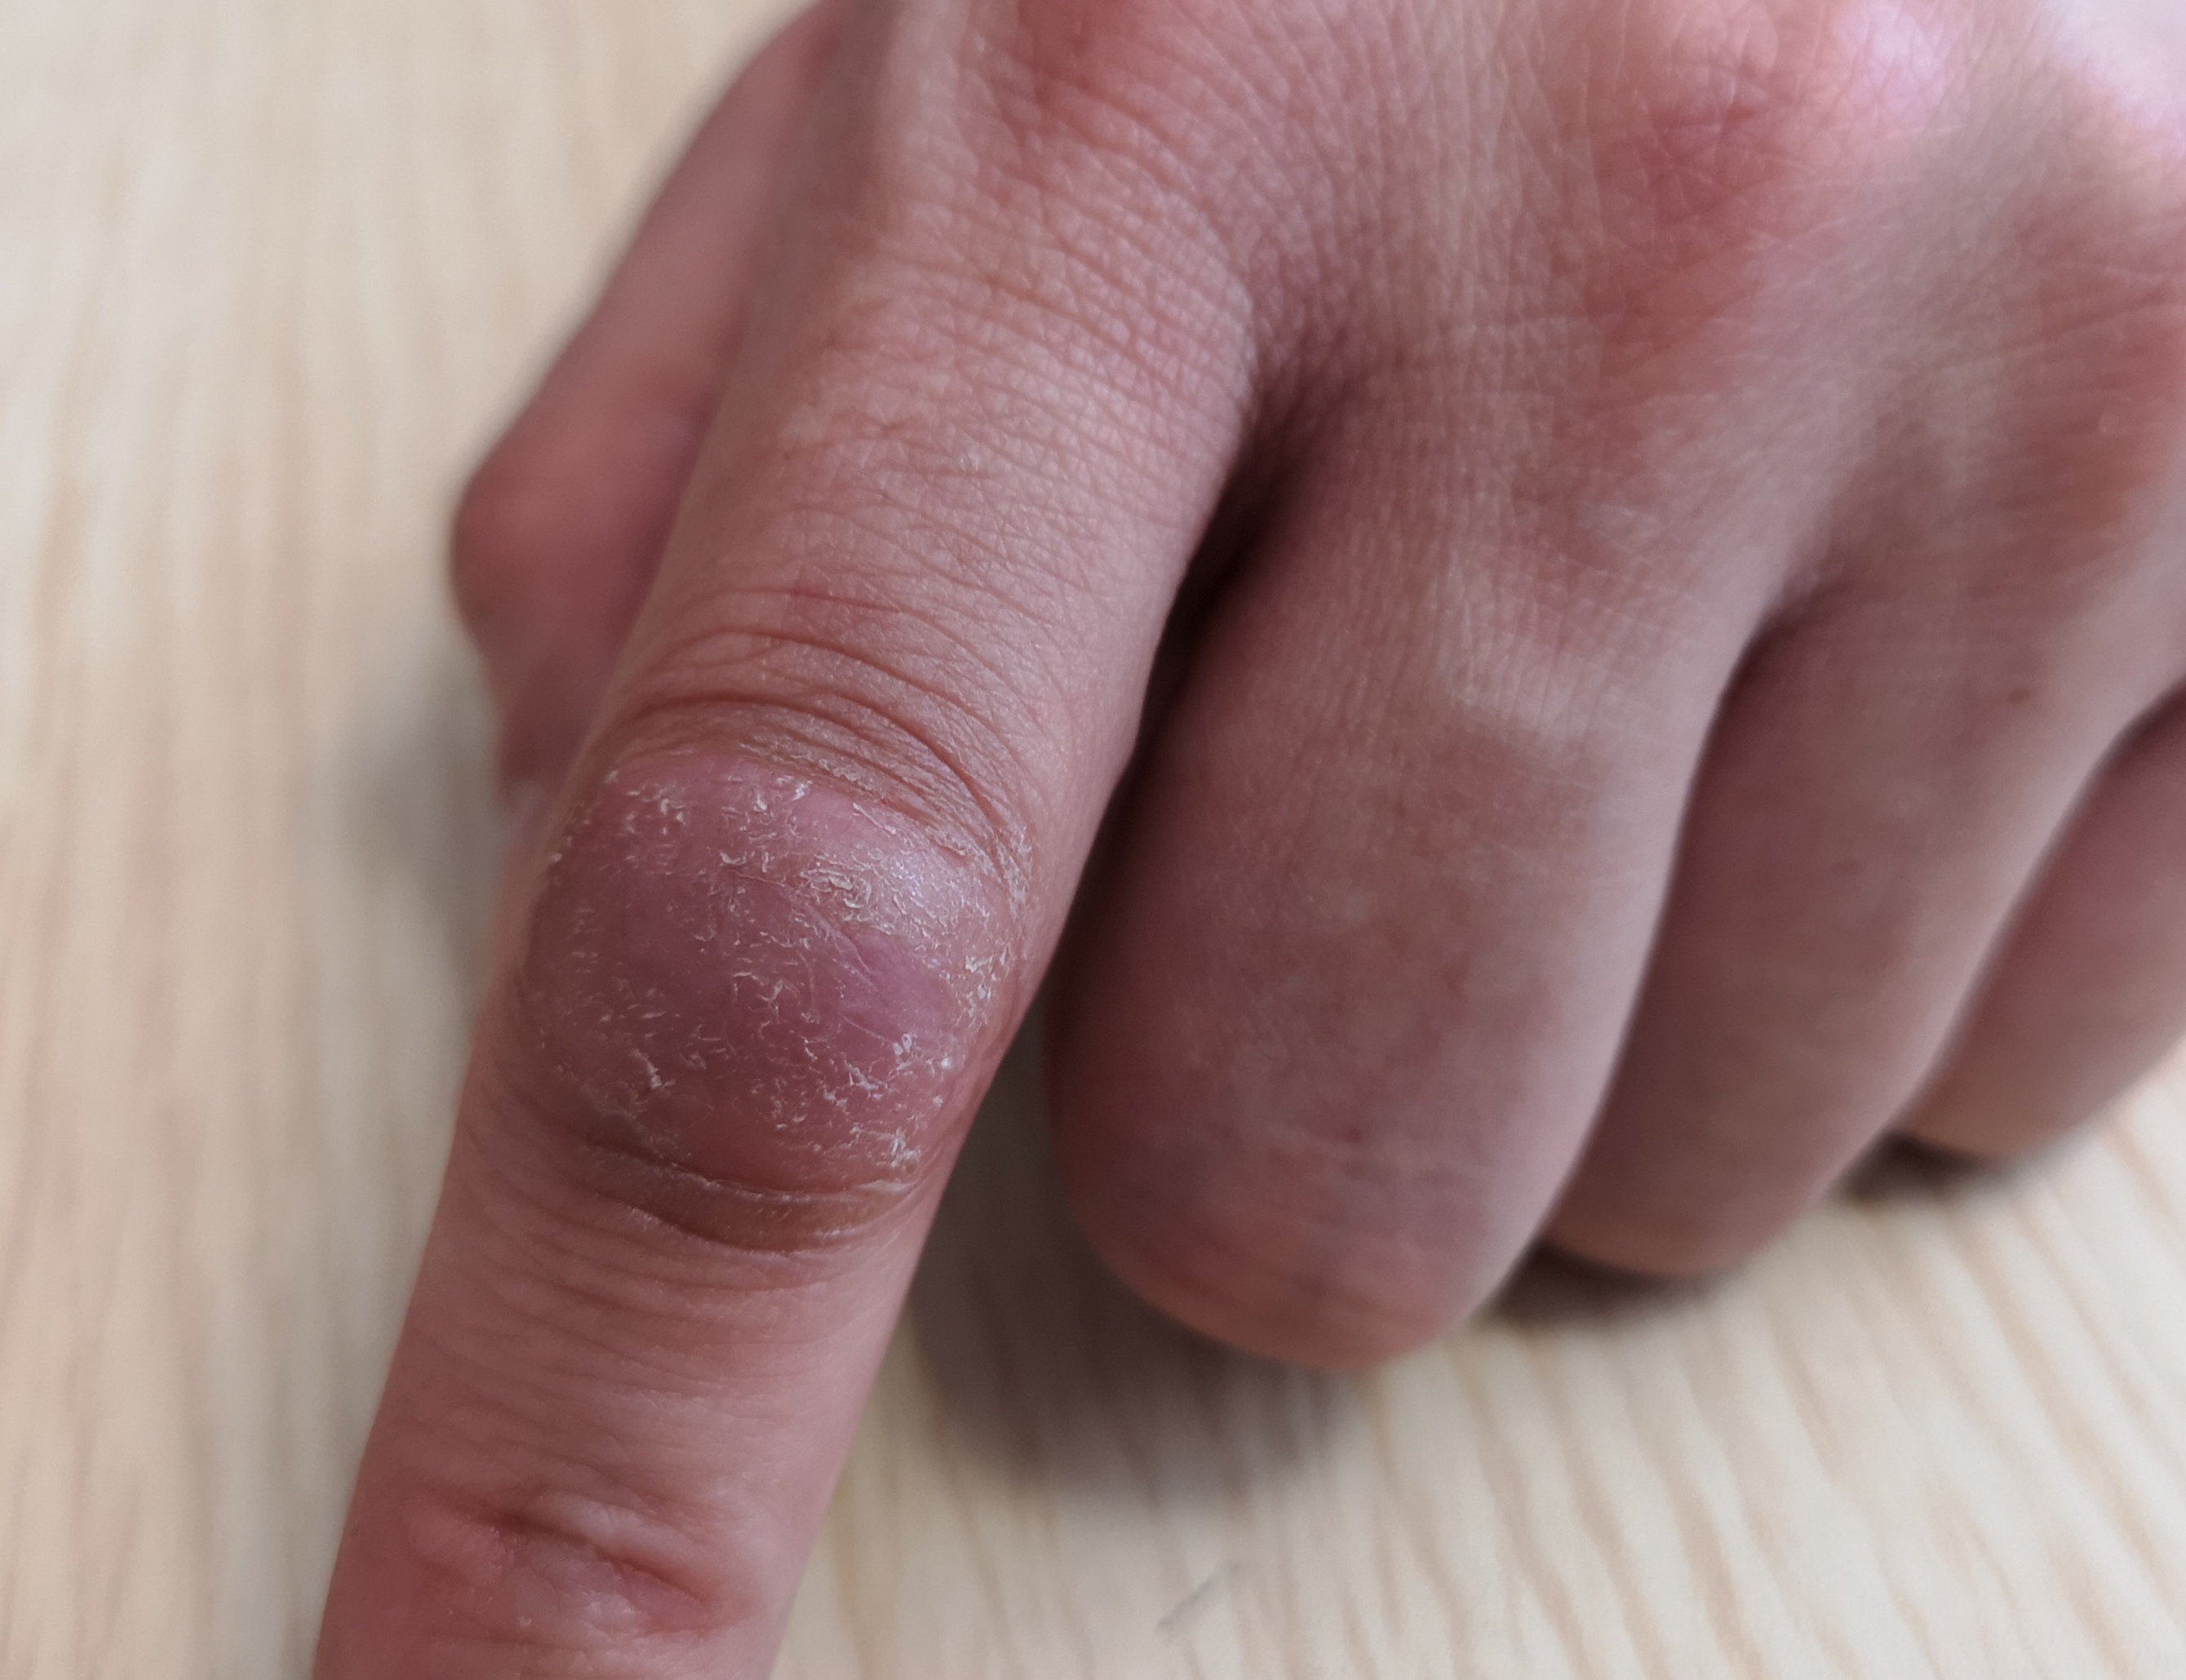 人的手指有三节指骨,所以每根手指有两个指间关节,分别称为近段指间